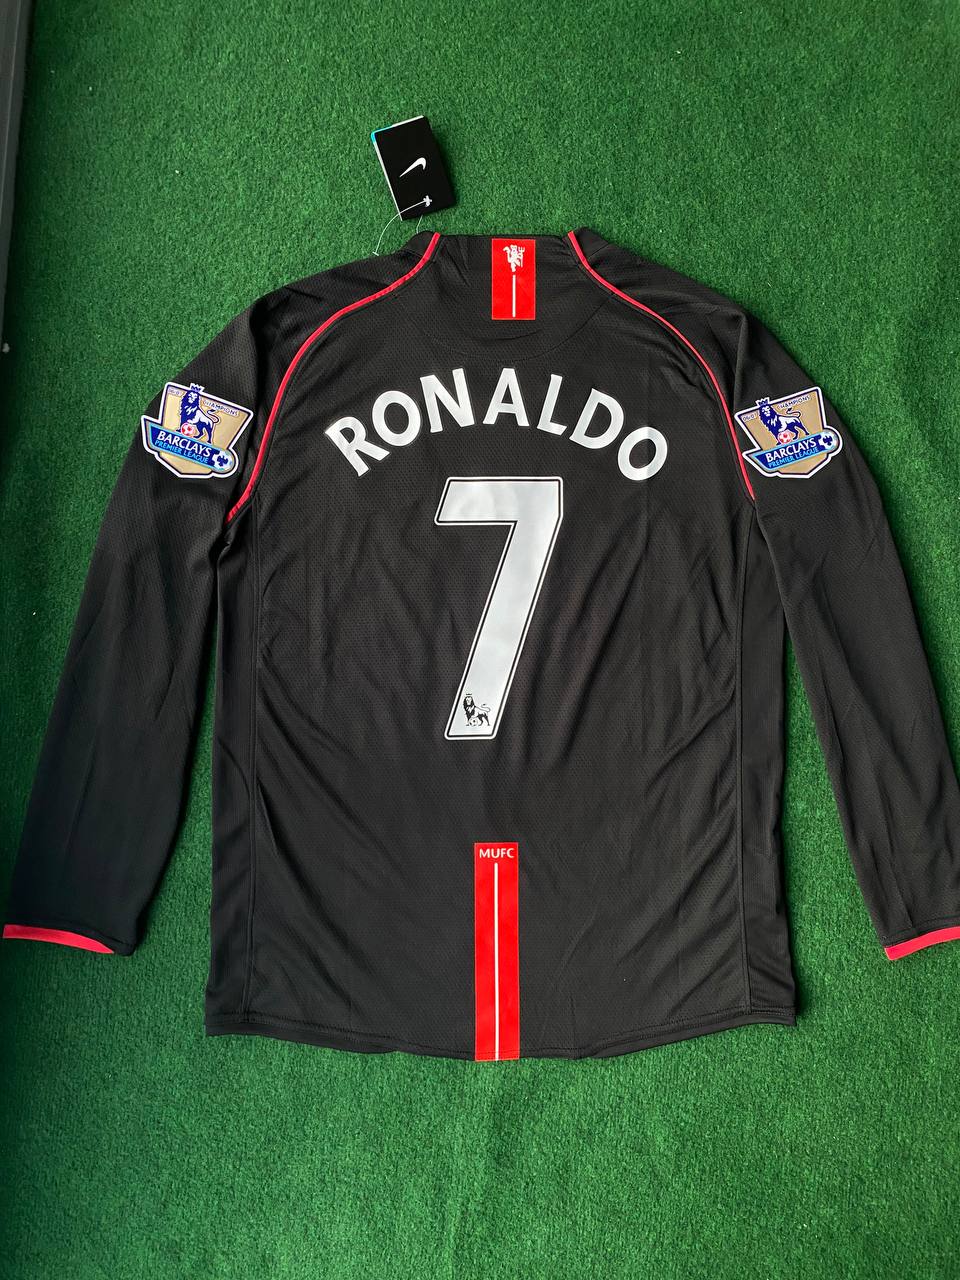 Cristiano Ronaldo Manchester United Black Retro Football Jersey